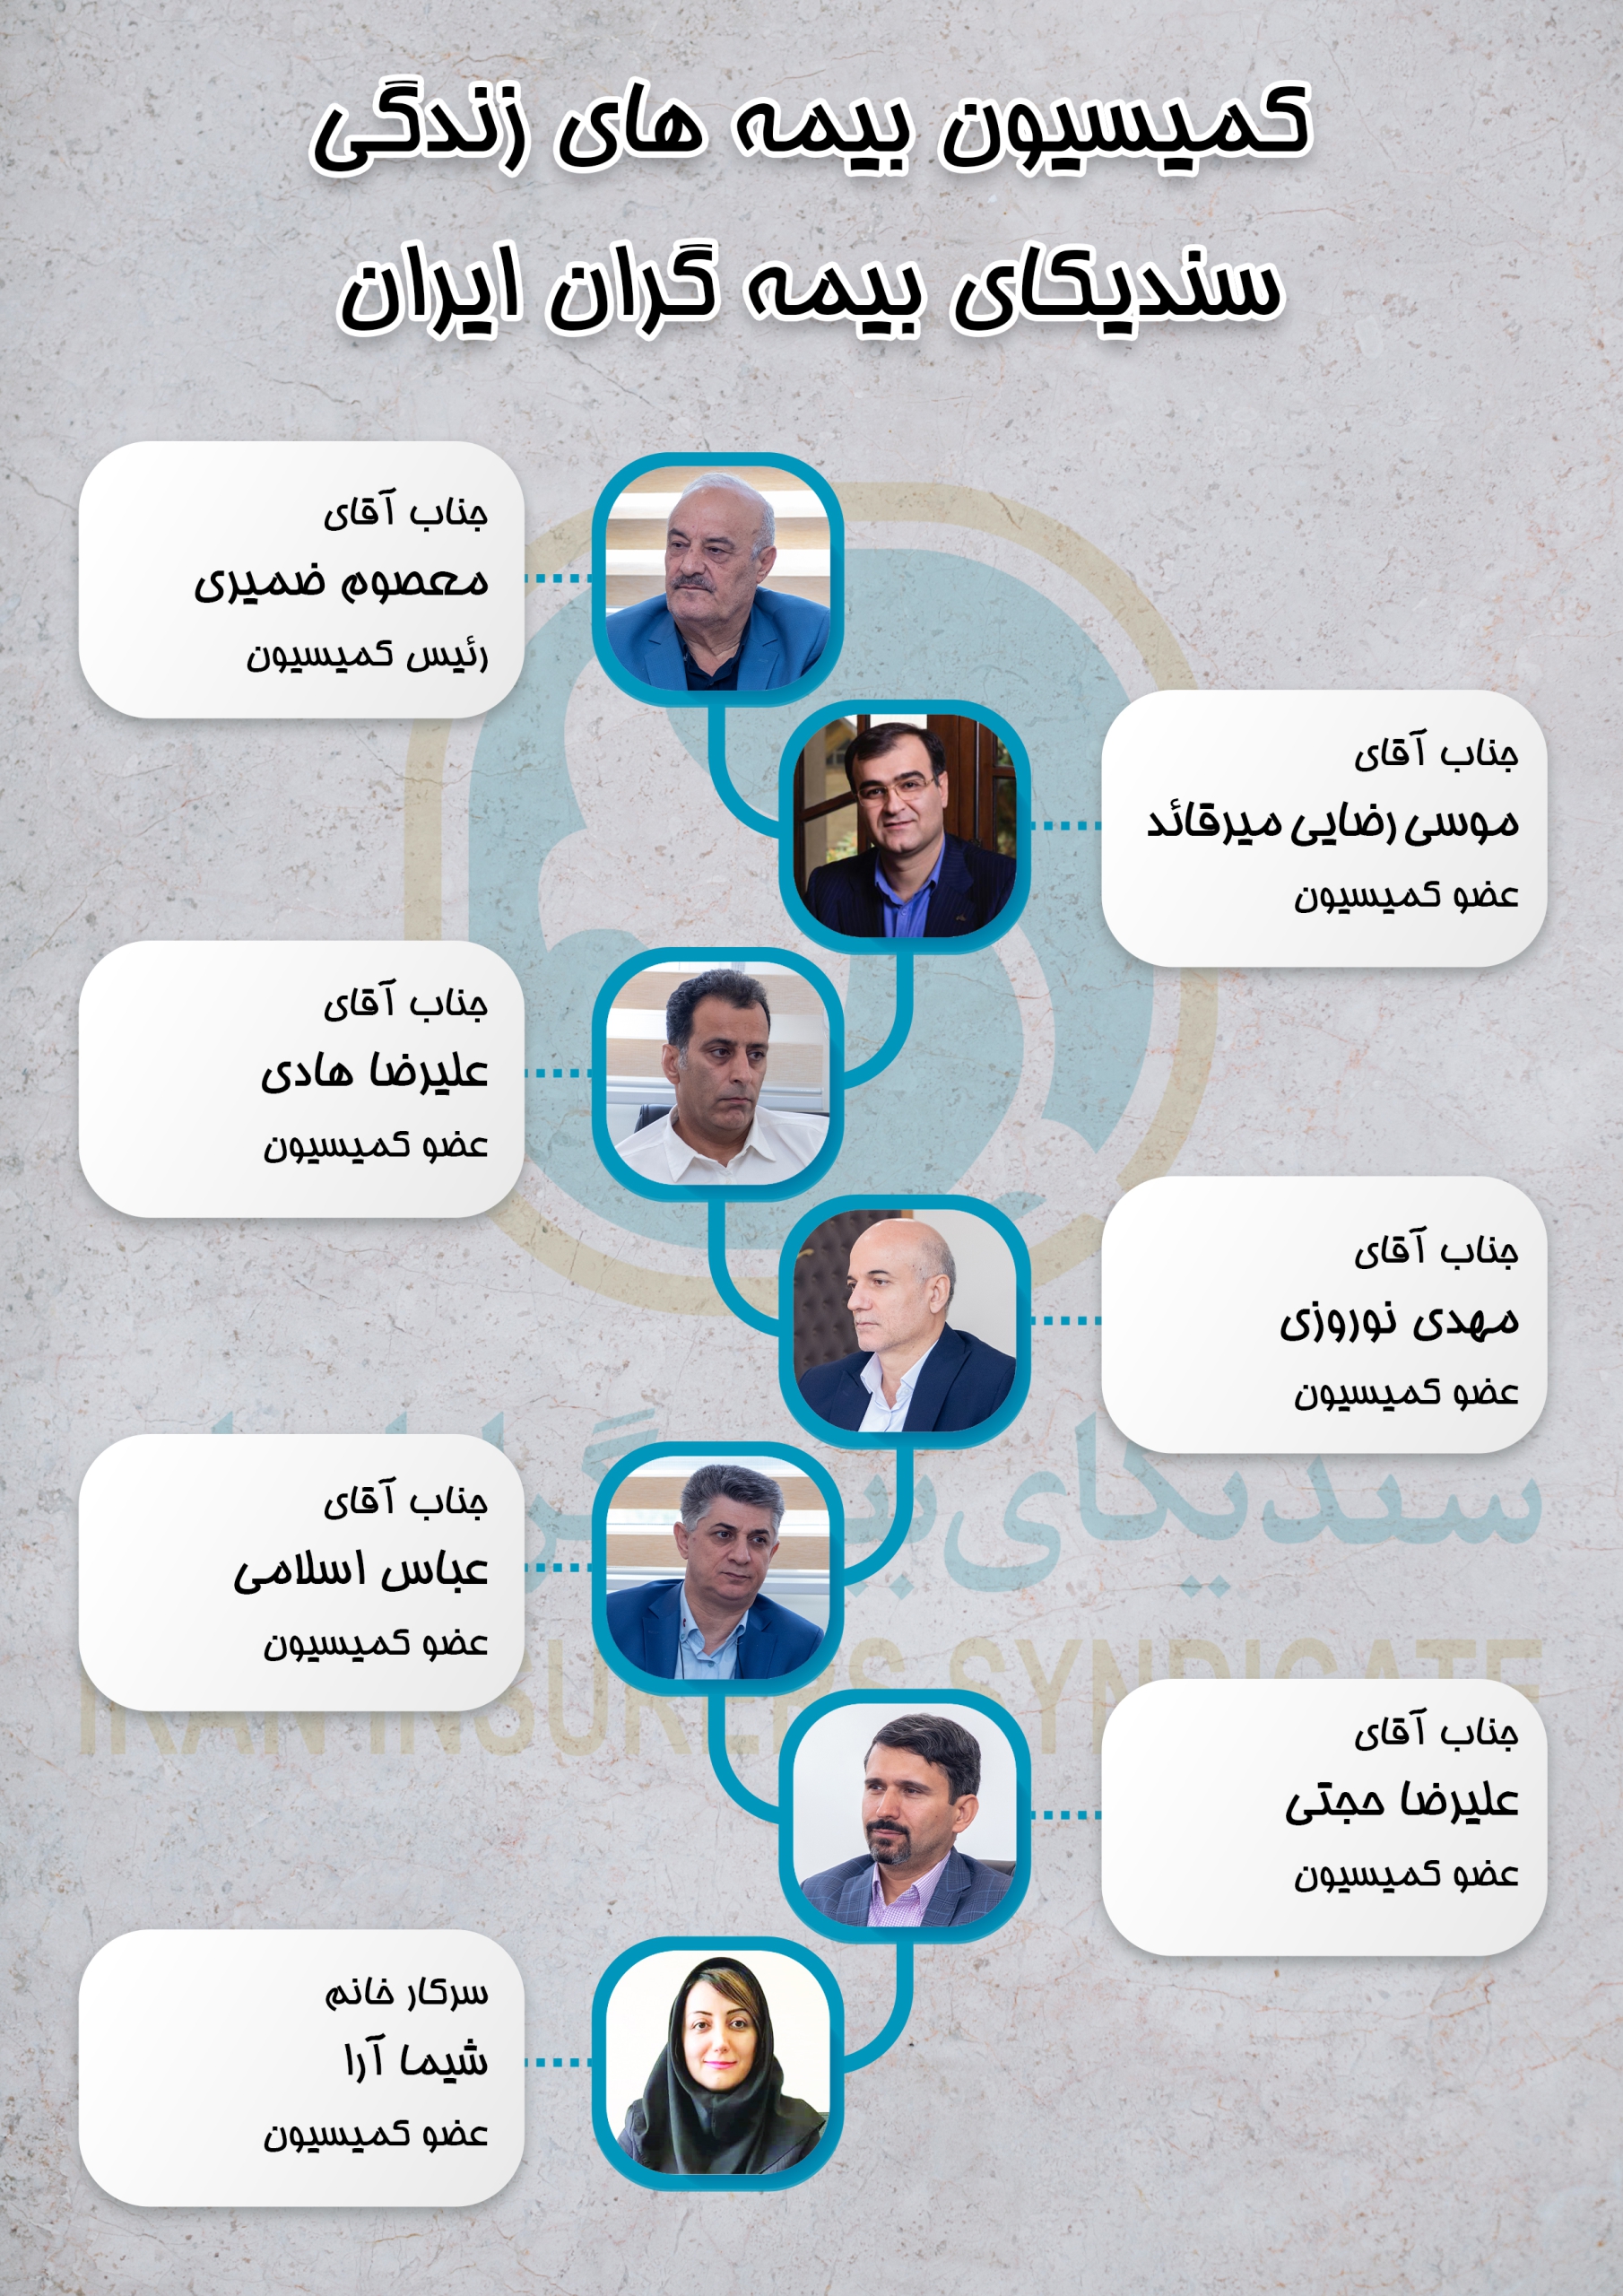 تجارت گردان | انتخاب آقای معصوم ضمیری بعنوان رئیس کمیسیون بیمه های زندگی سندیکای بیمه گران ایران